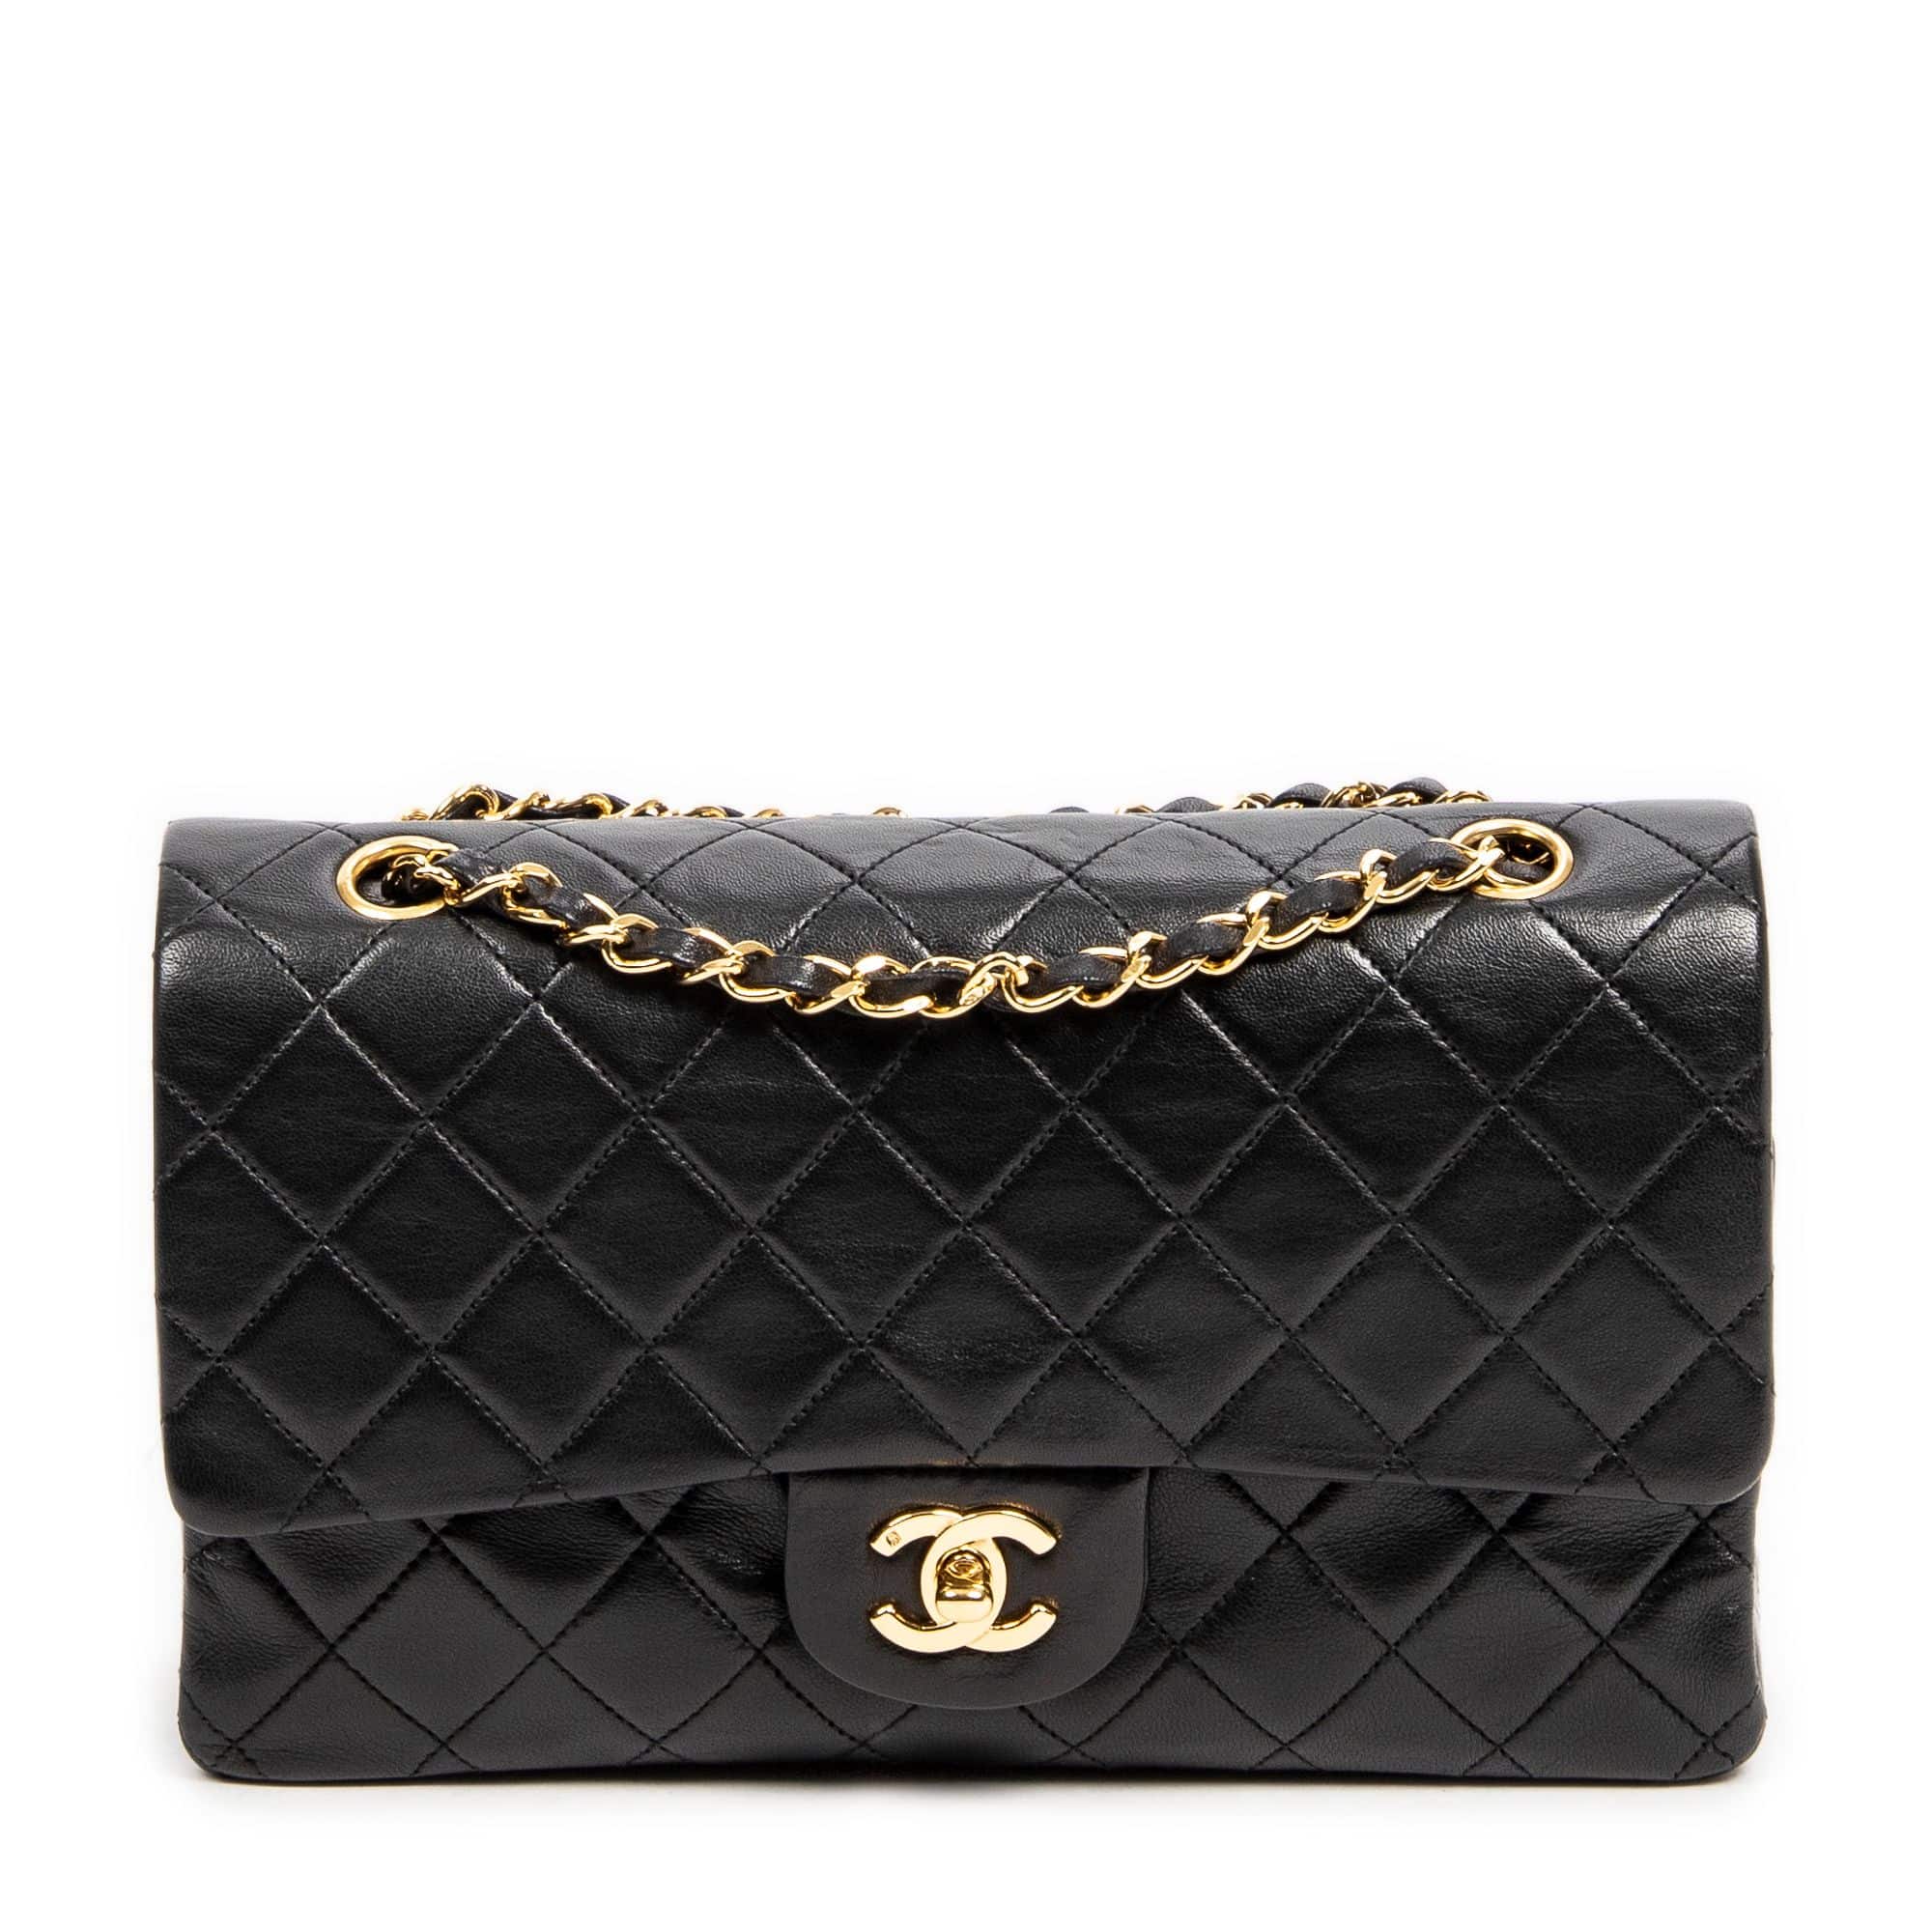 Chanel-Hermes-Louis Vuitton Paris Auction Catalog 2011